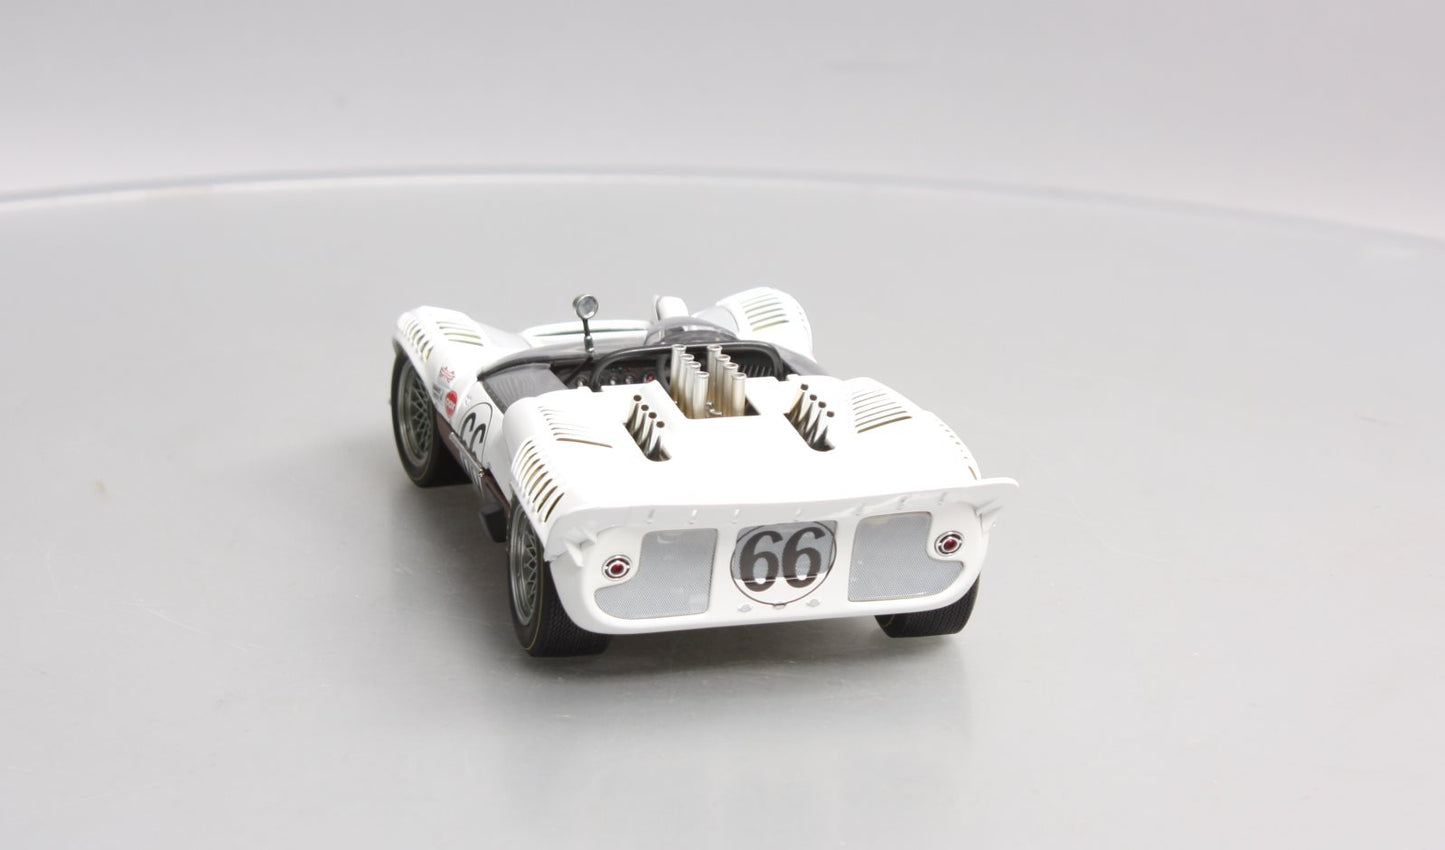 AutoArt Millennium 86946 1/18 Die-Cast 1965 Chaparral 2 Sport Racer #66/Box